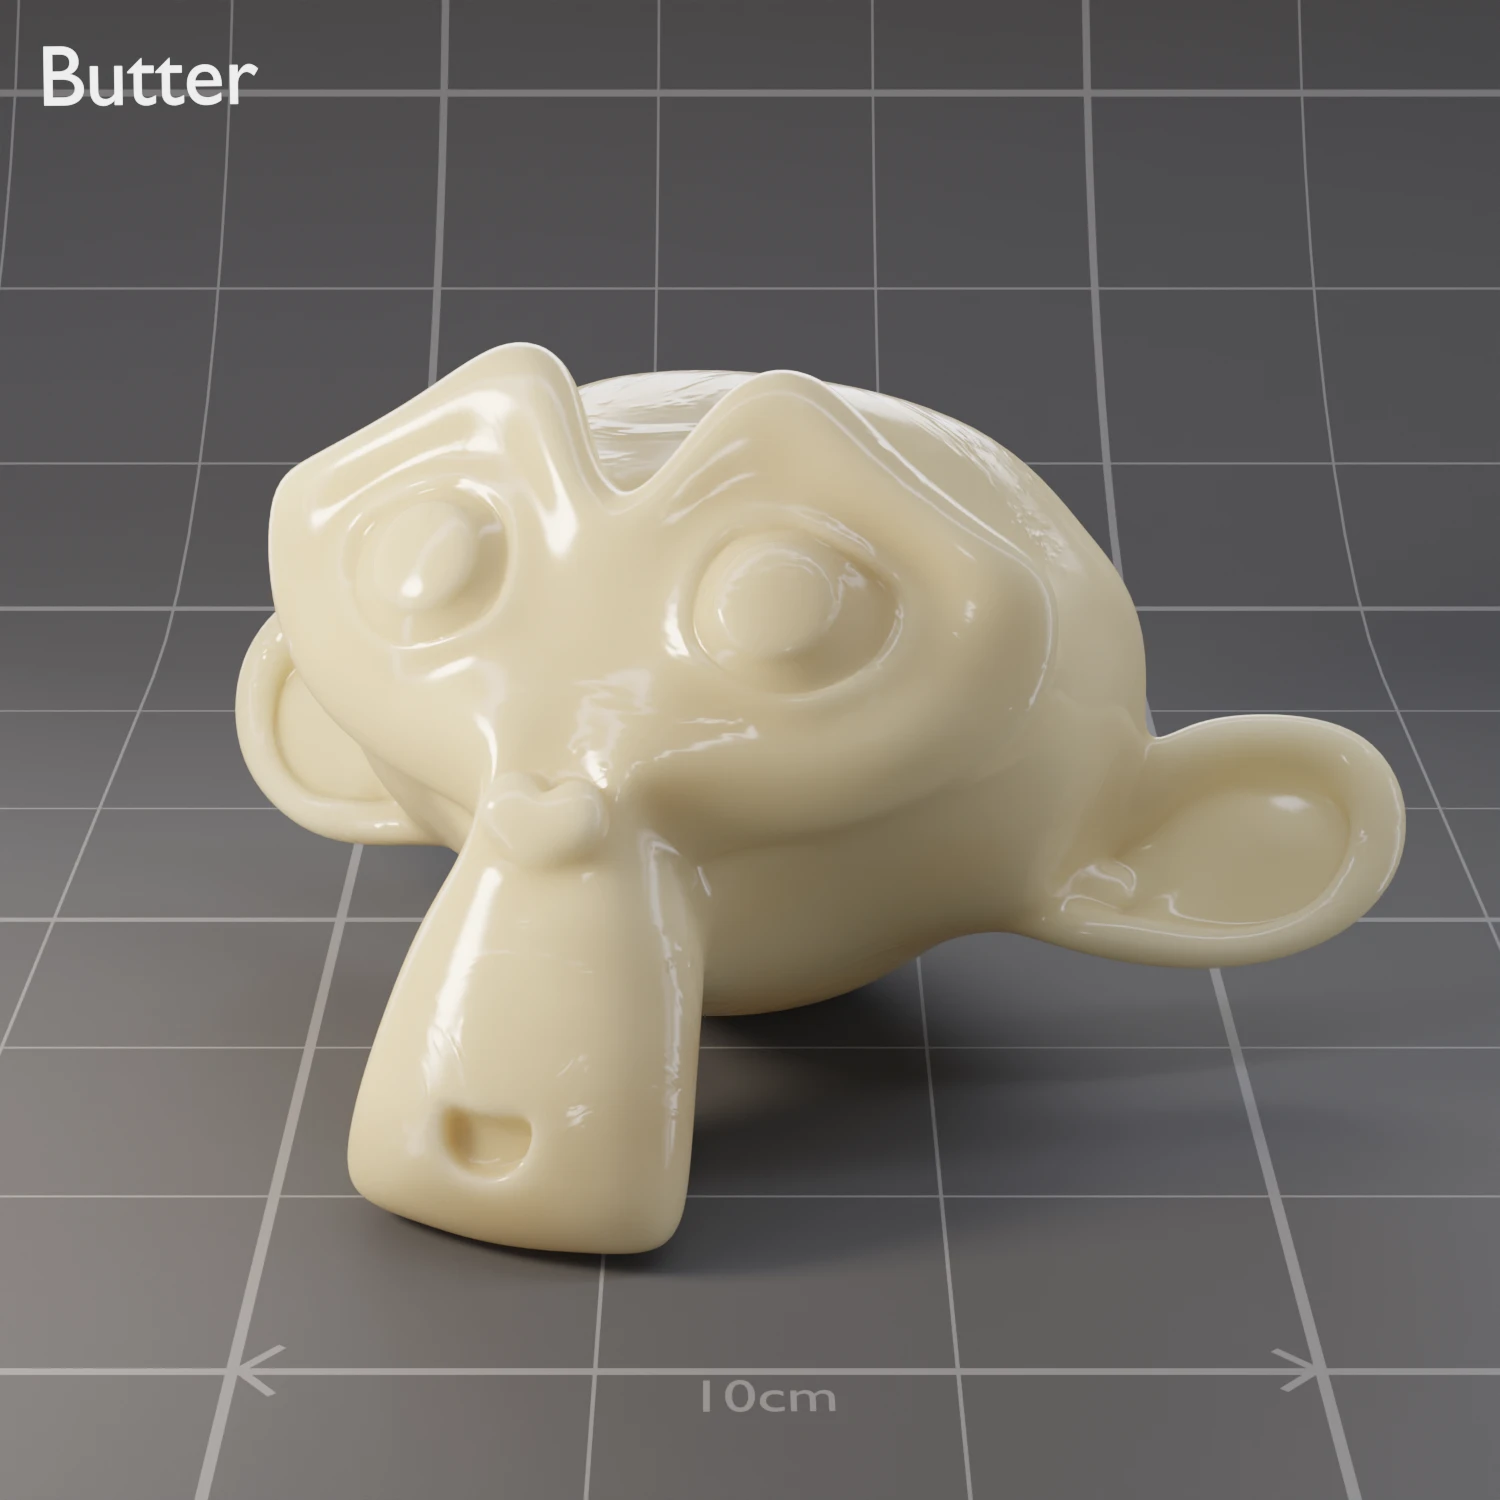 /pr/image/mats/Butter.WebP